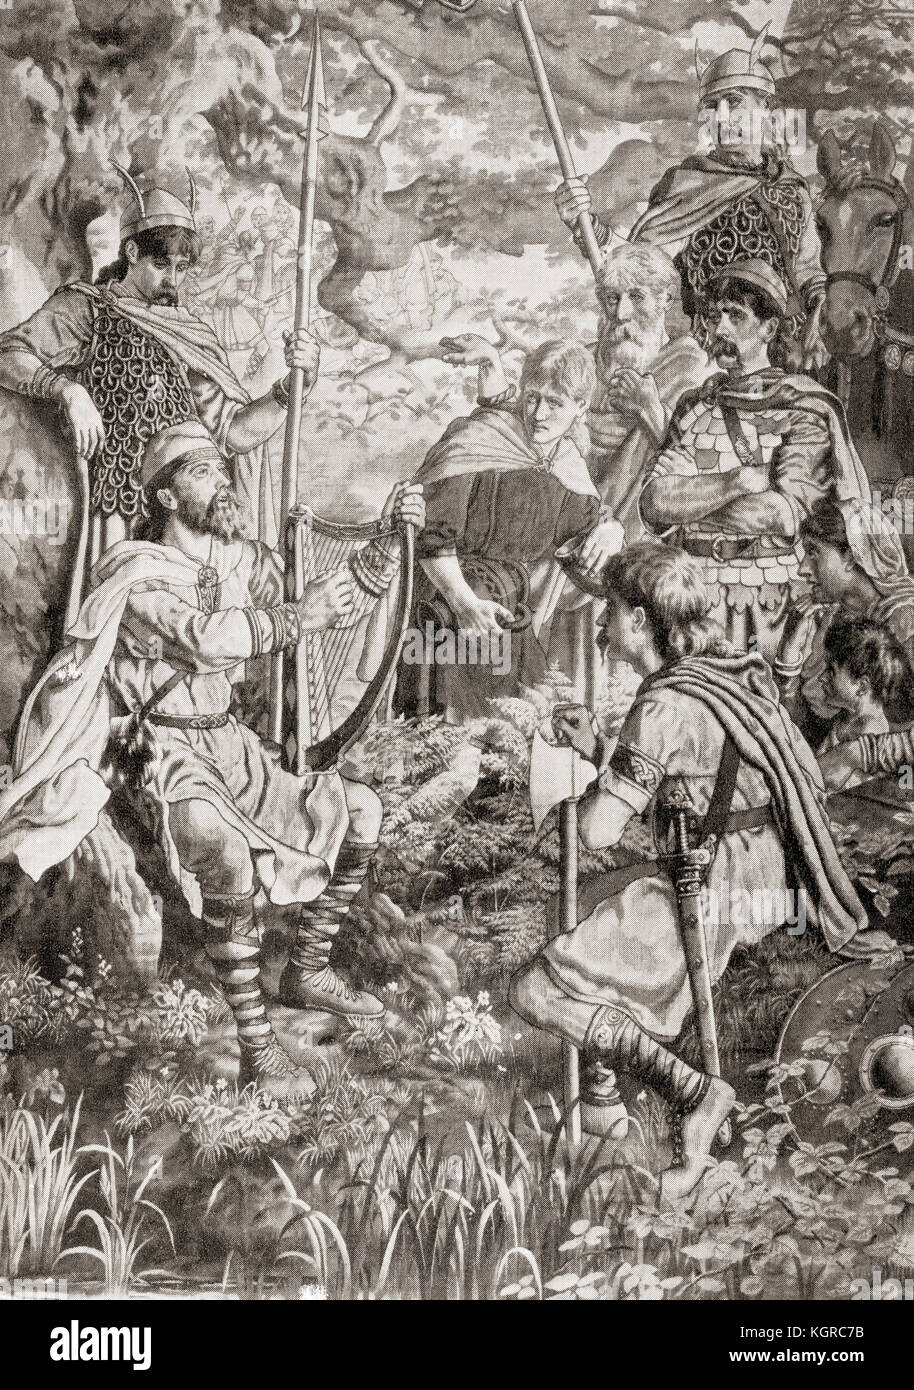 King Alfred disfrazada como un juglar paseando y tocando el arpa en el campamento de danés guthrum, 878. Alfred el grande, 849 - 899. El rey de Wessex. de Hutchinson la historia de las naciones, publicado en 1915. Foto de stock